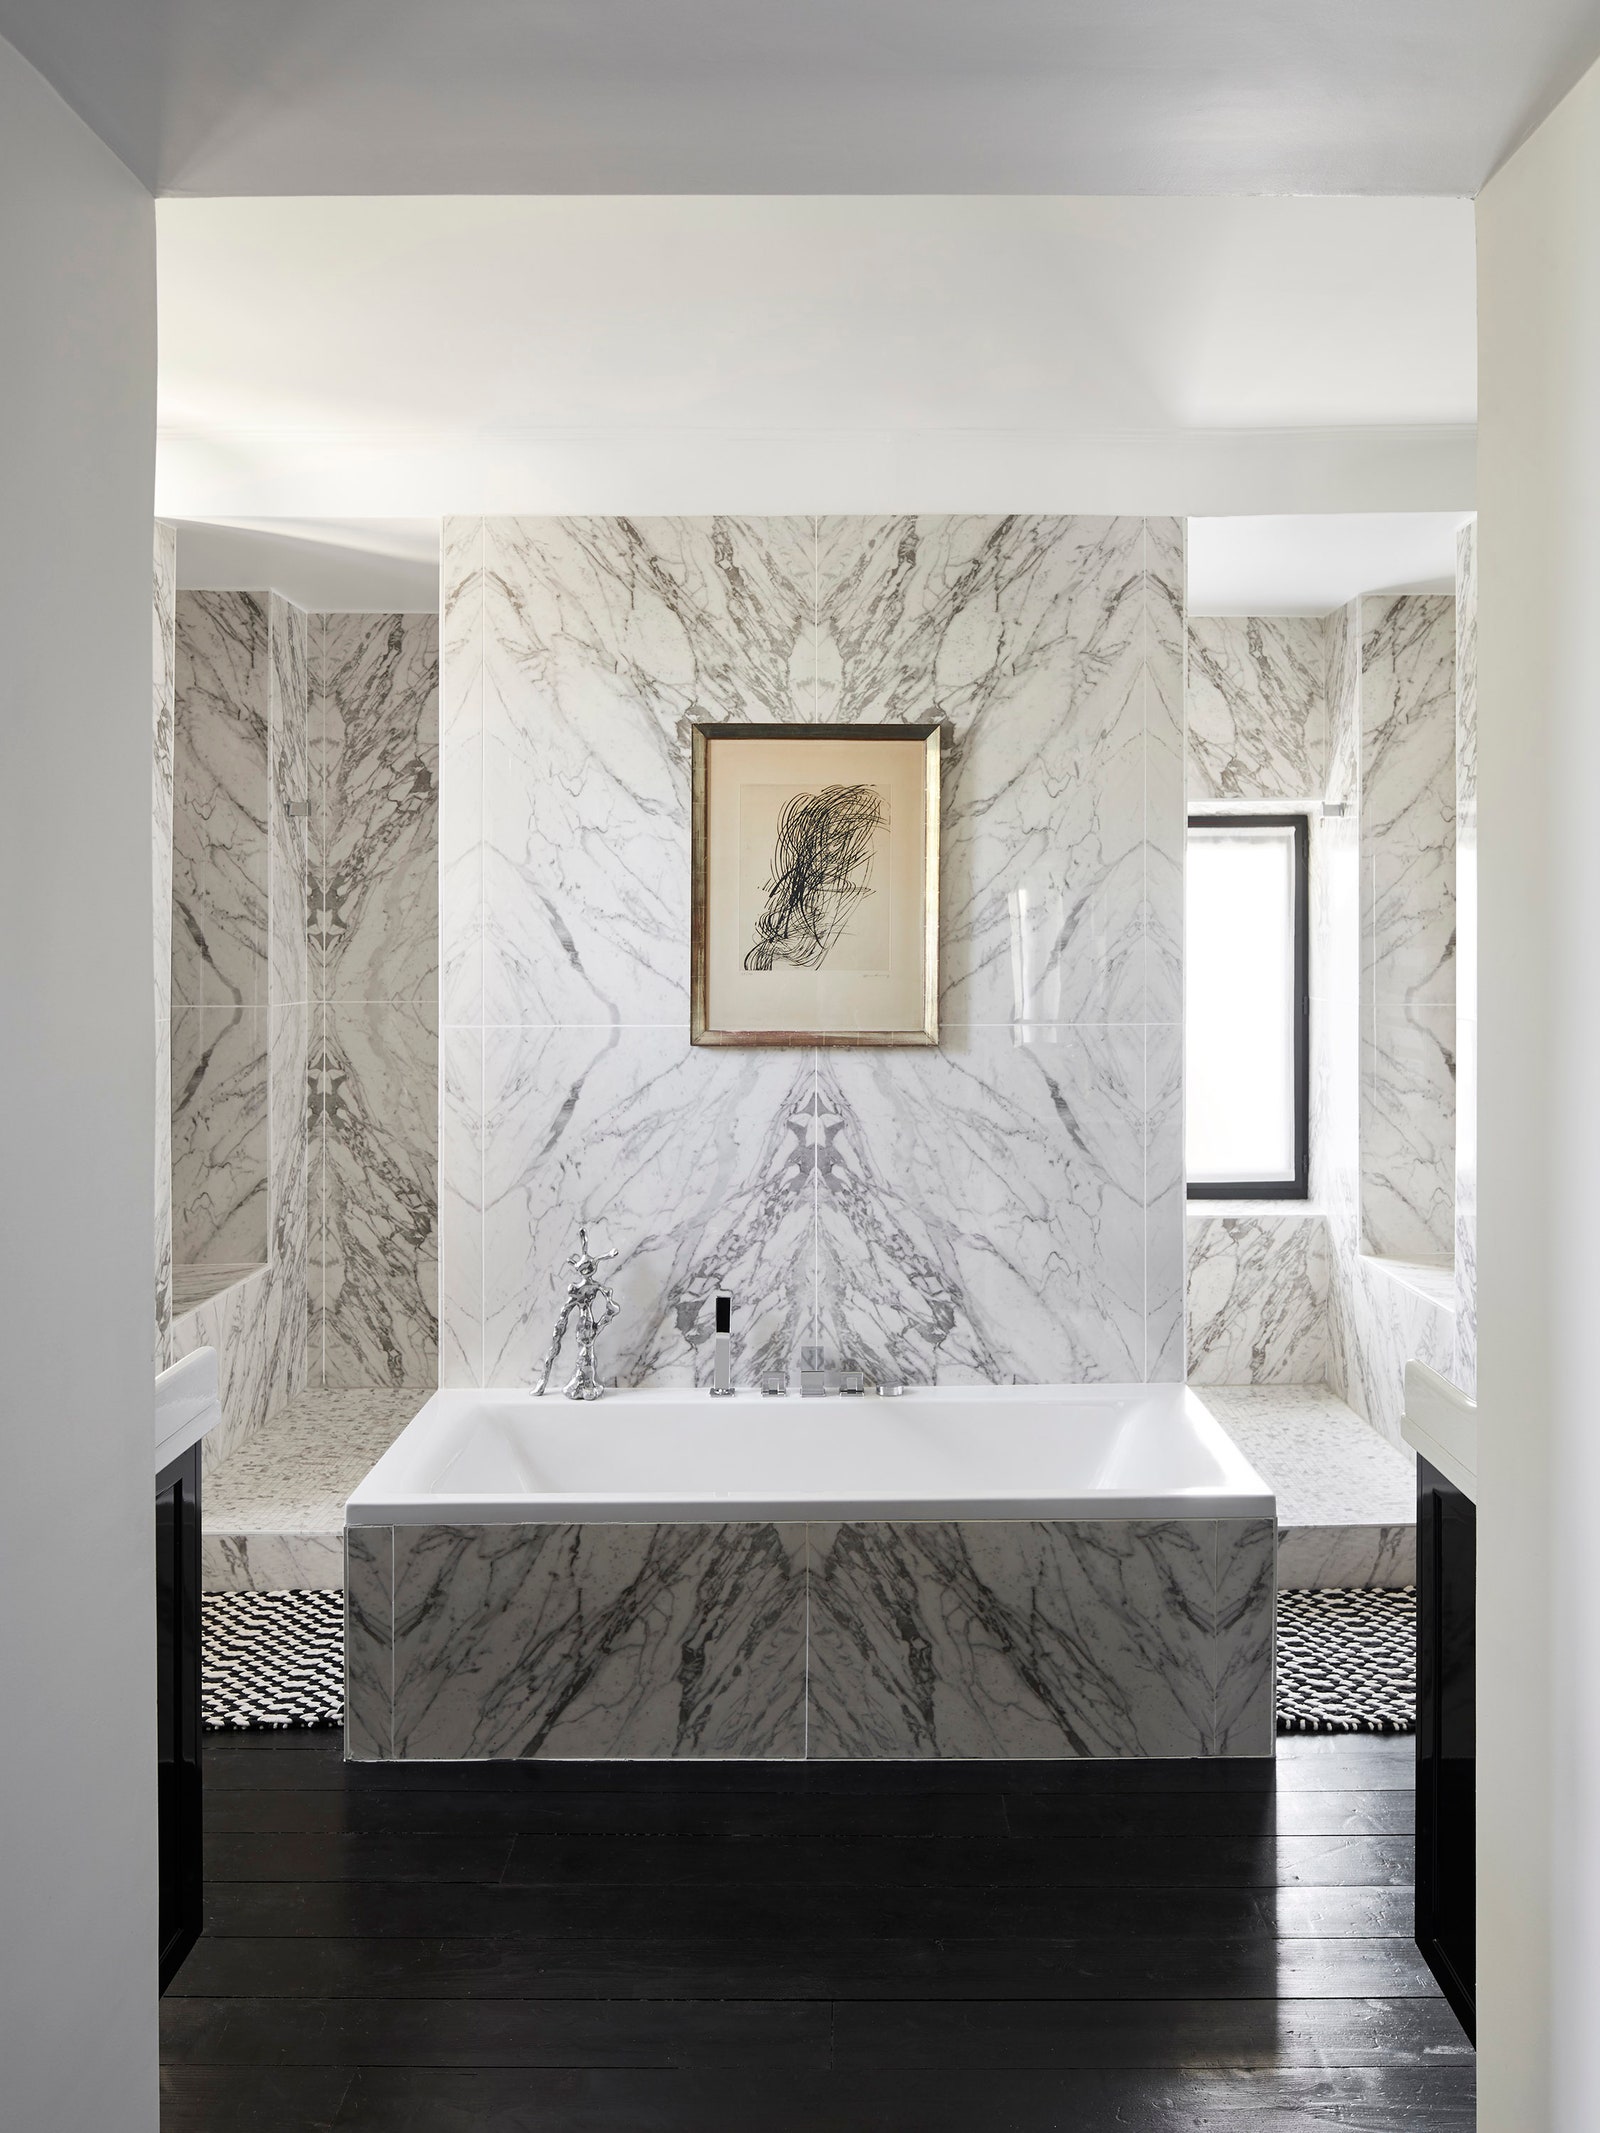 Хозяйская ванная комната. Ванна Duravit. Над ней картина Ханса Хартунга.